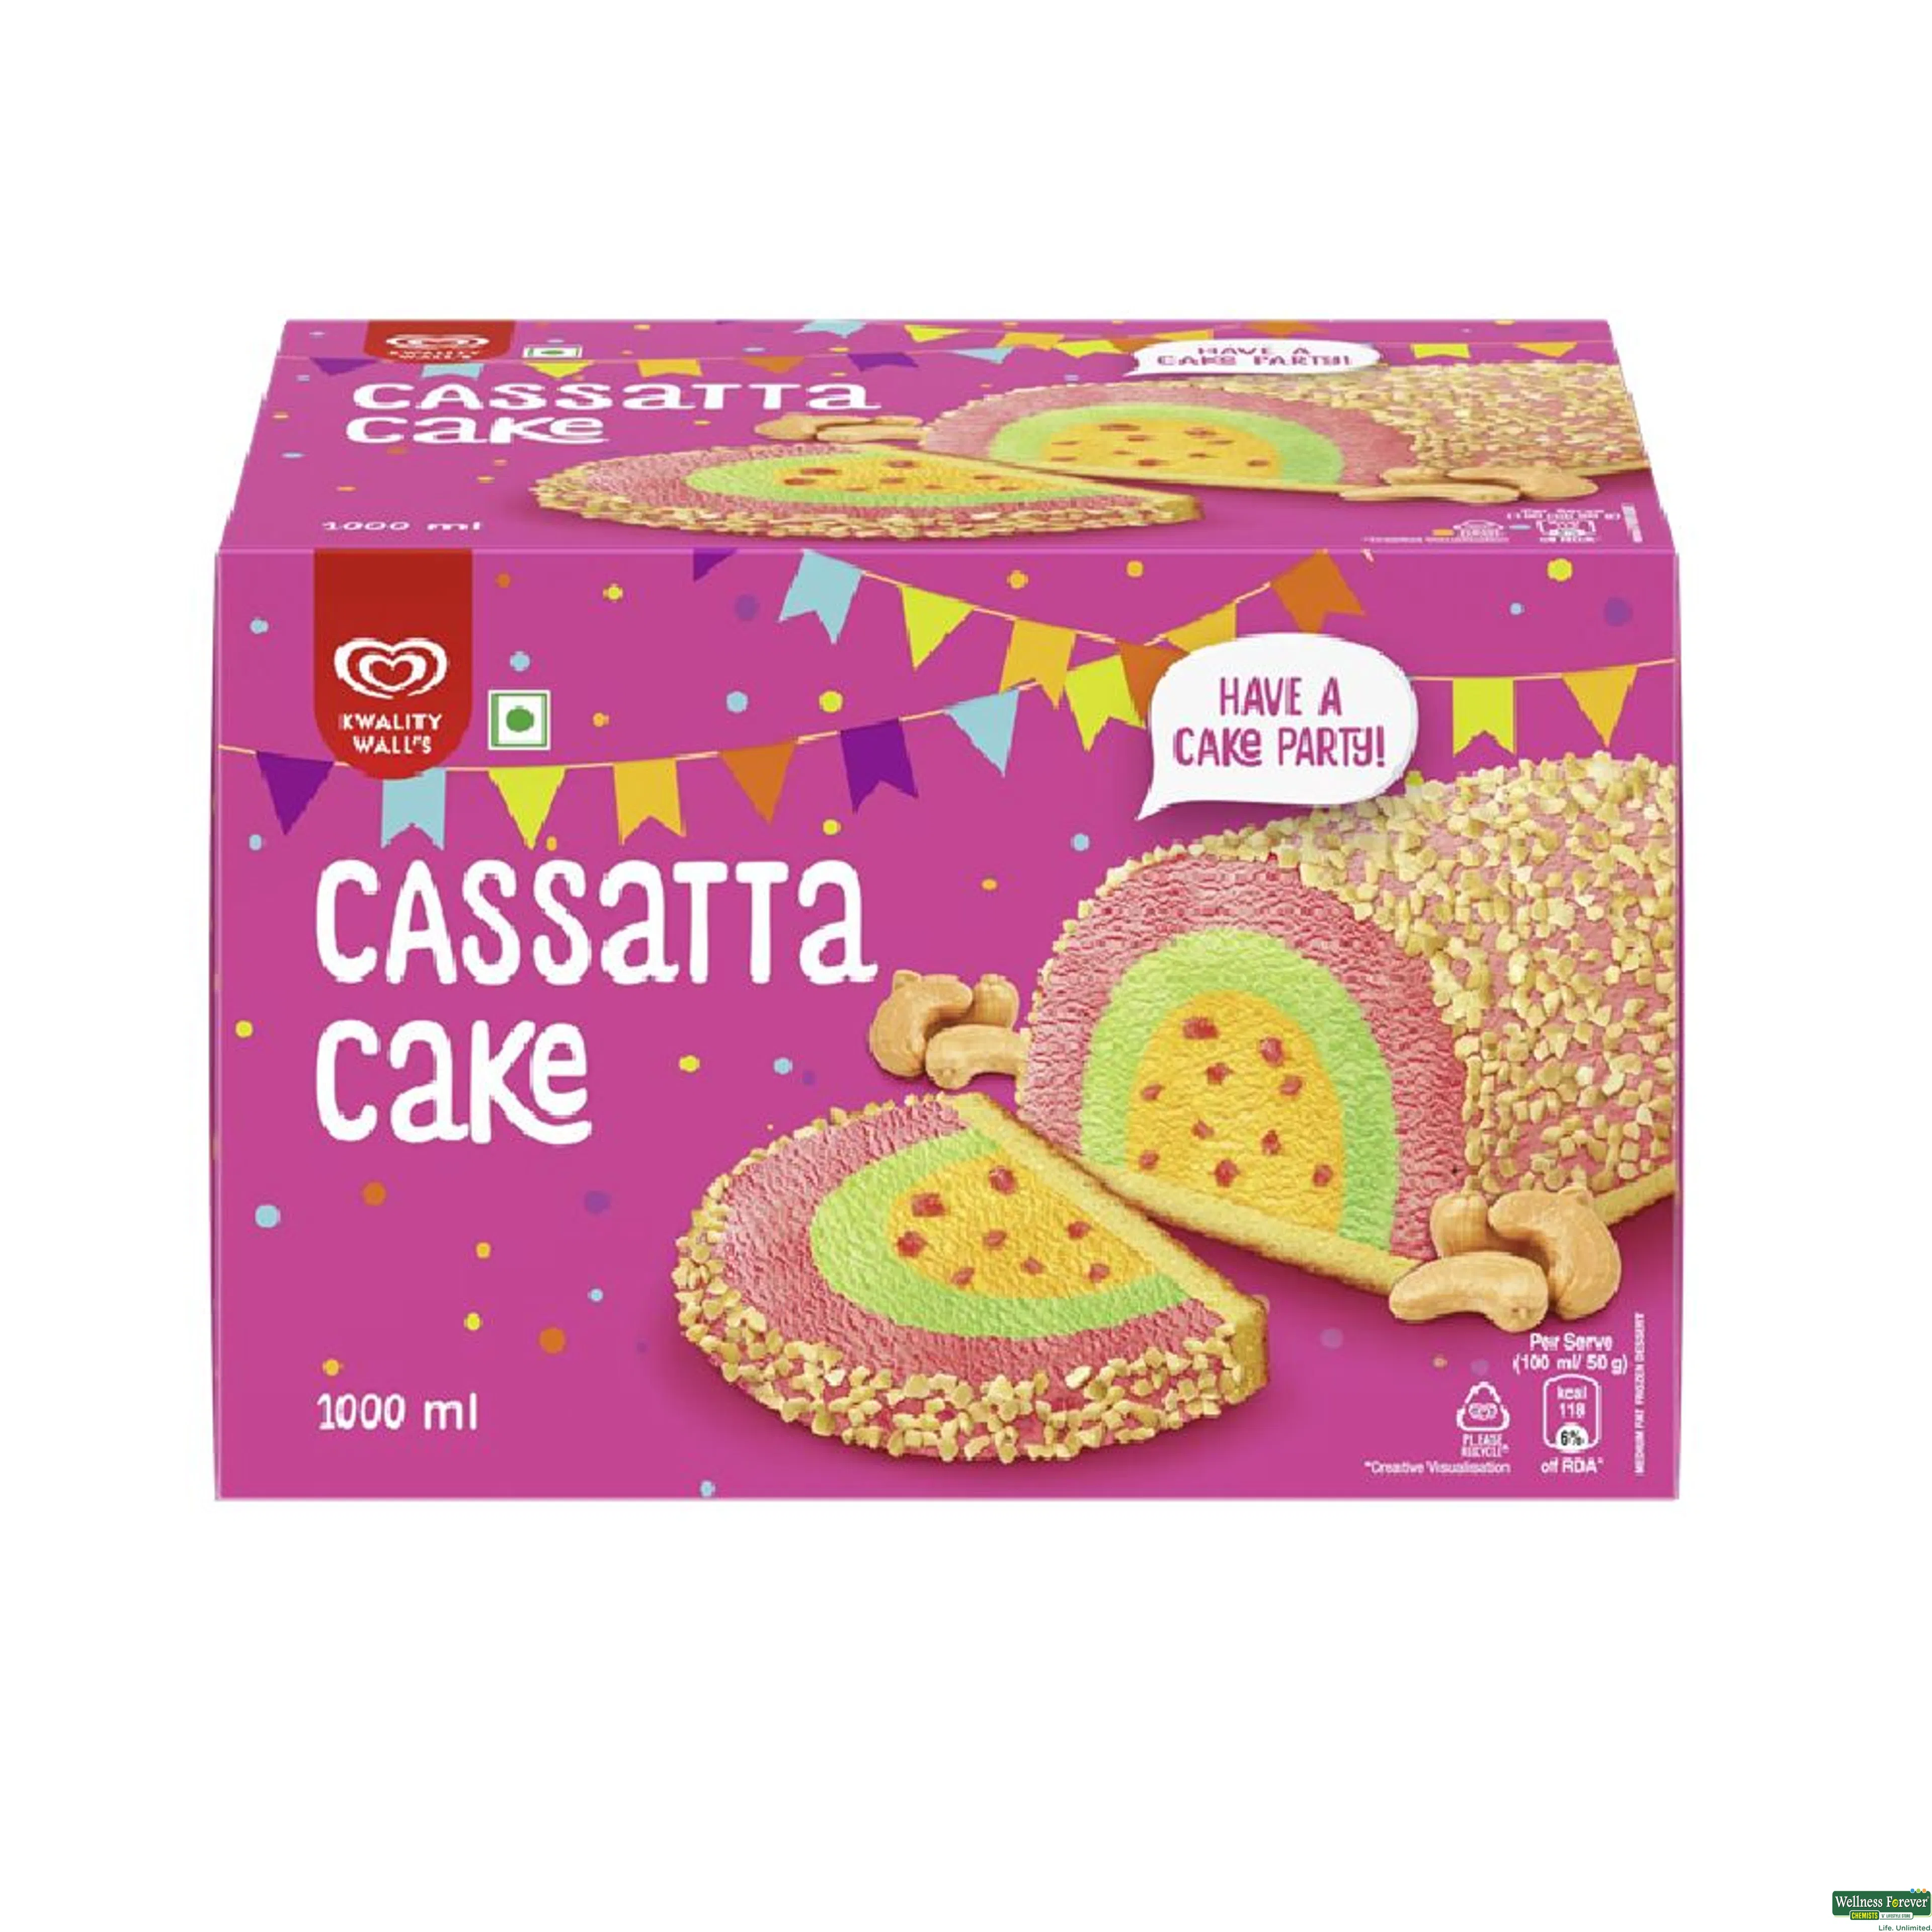 KW I/C CASSATTA CAKE 1LTR-image